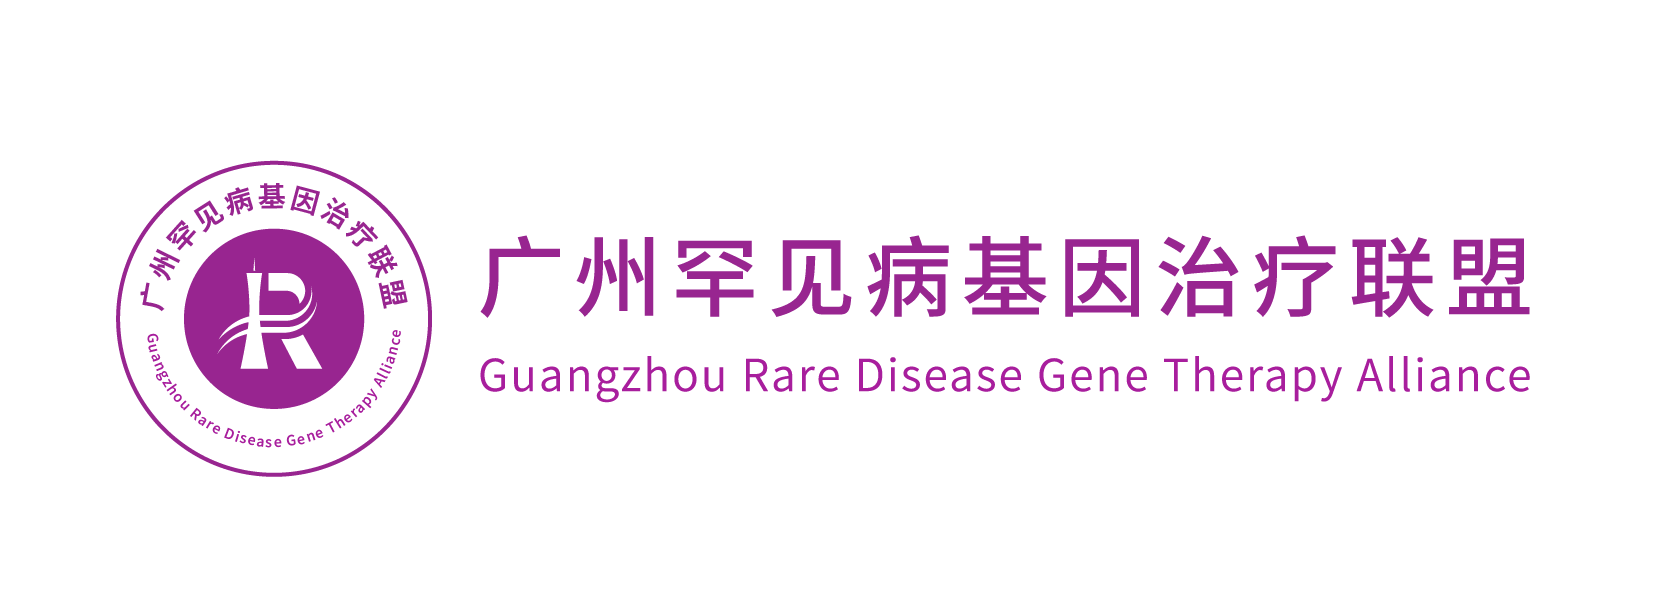 广州罕见病基因治疗联盟